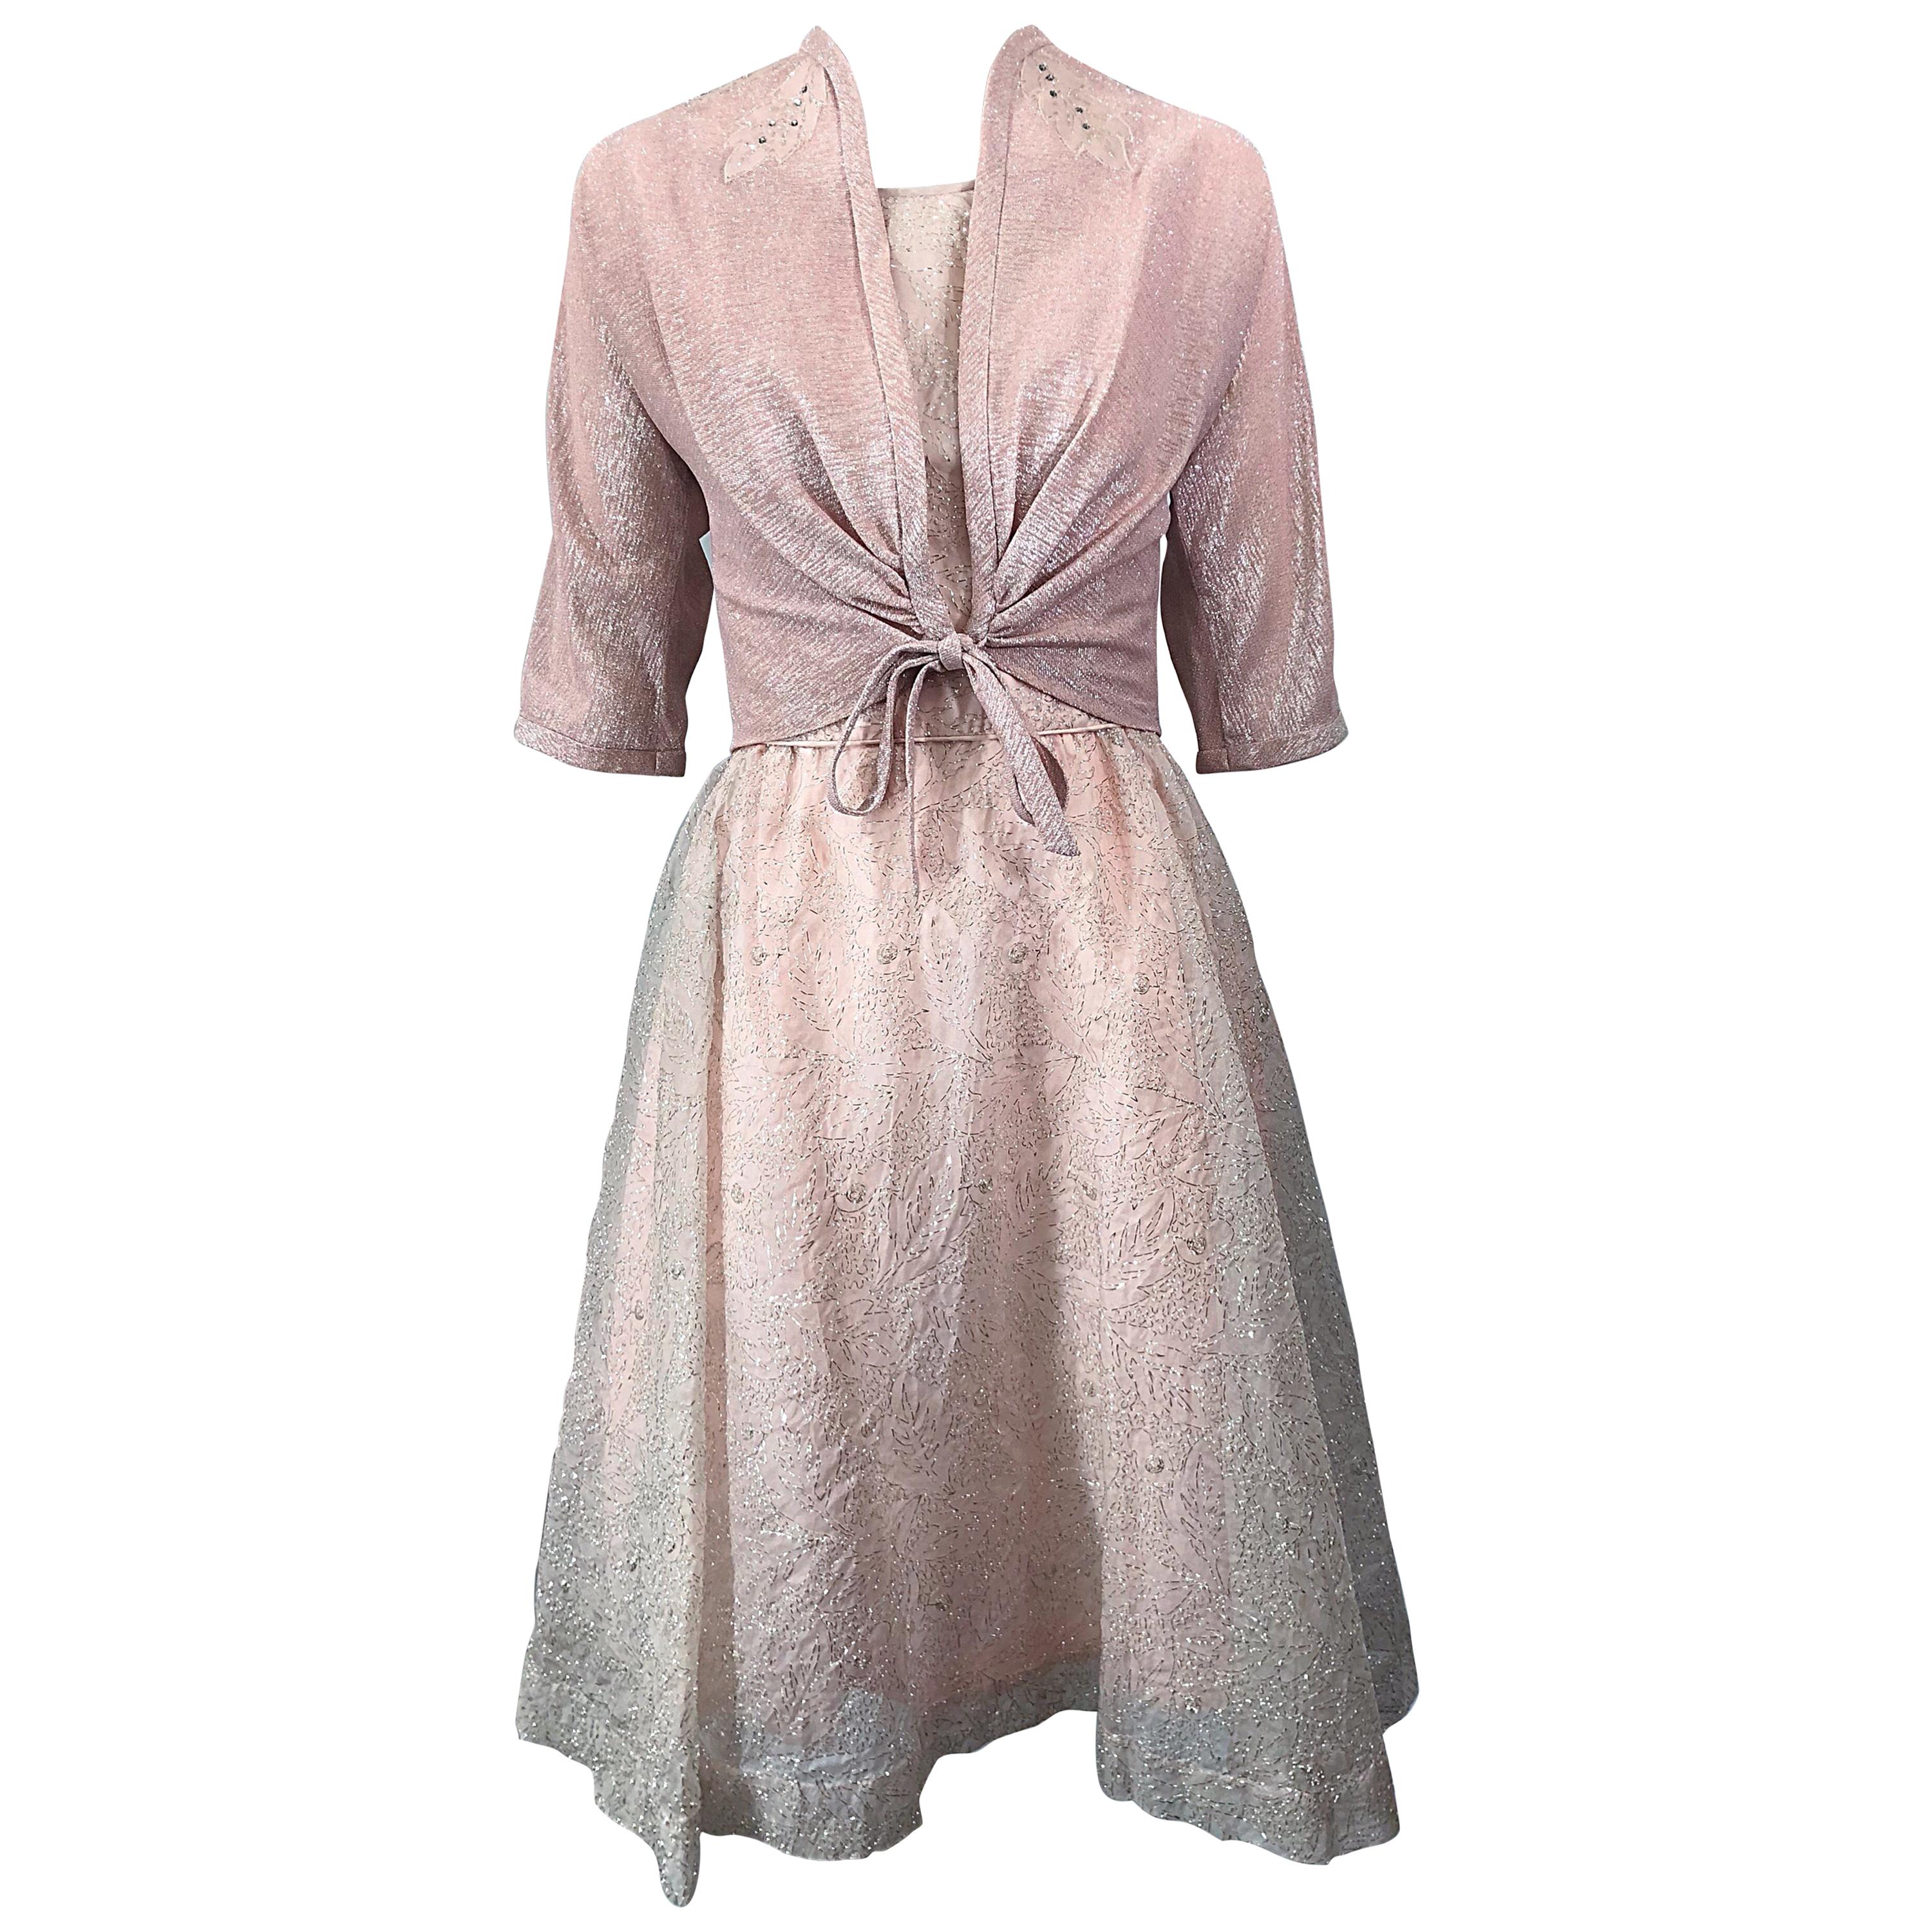 Magnifique robe en soie Caryle rose clair + argentée ajustée et évasée et boléro, années 1950